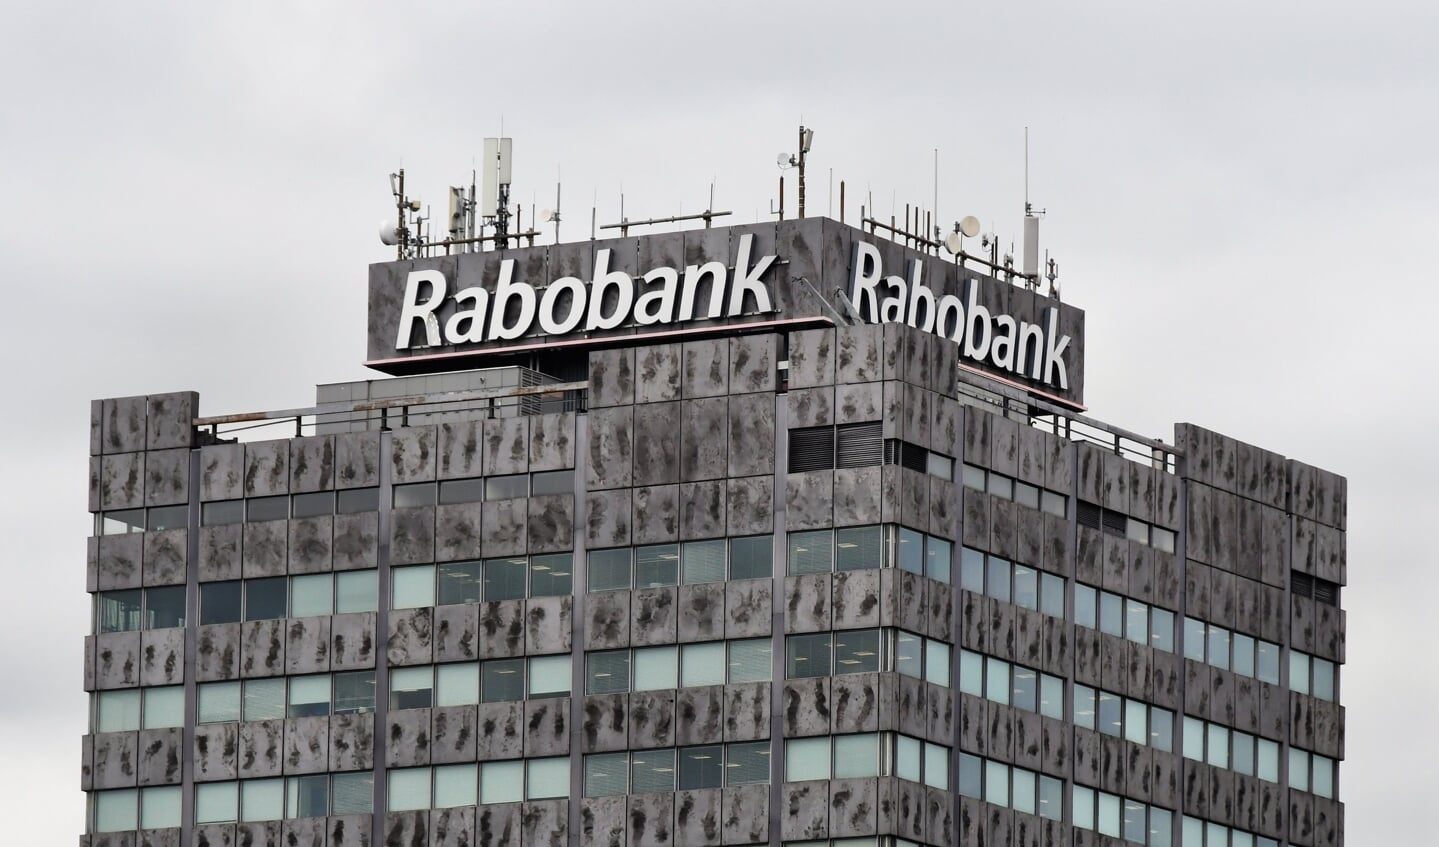 Donderdagmorgen wordt begonnen met het verwijderen aan twee kanten van de naam Rabobank. 